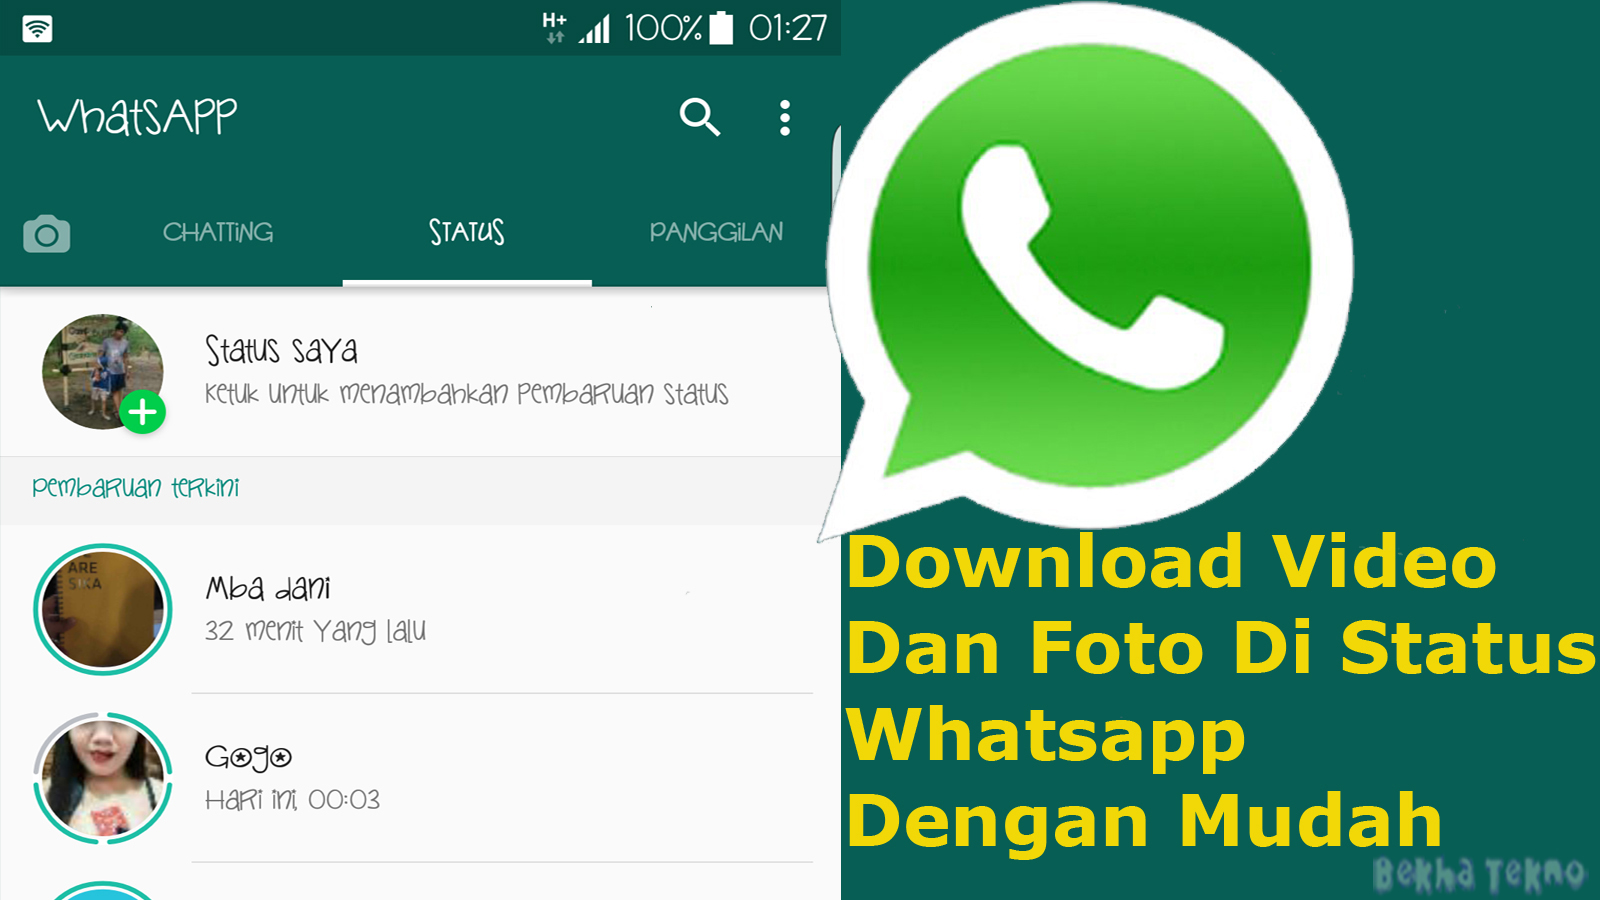 Cara Menyimpan Video Dan Foto Di Status Whatsapp Teman Dengan Mudah.